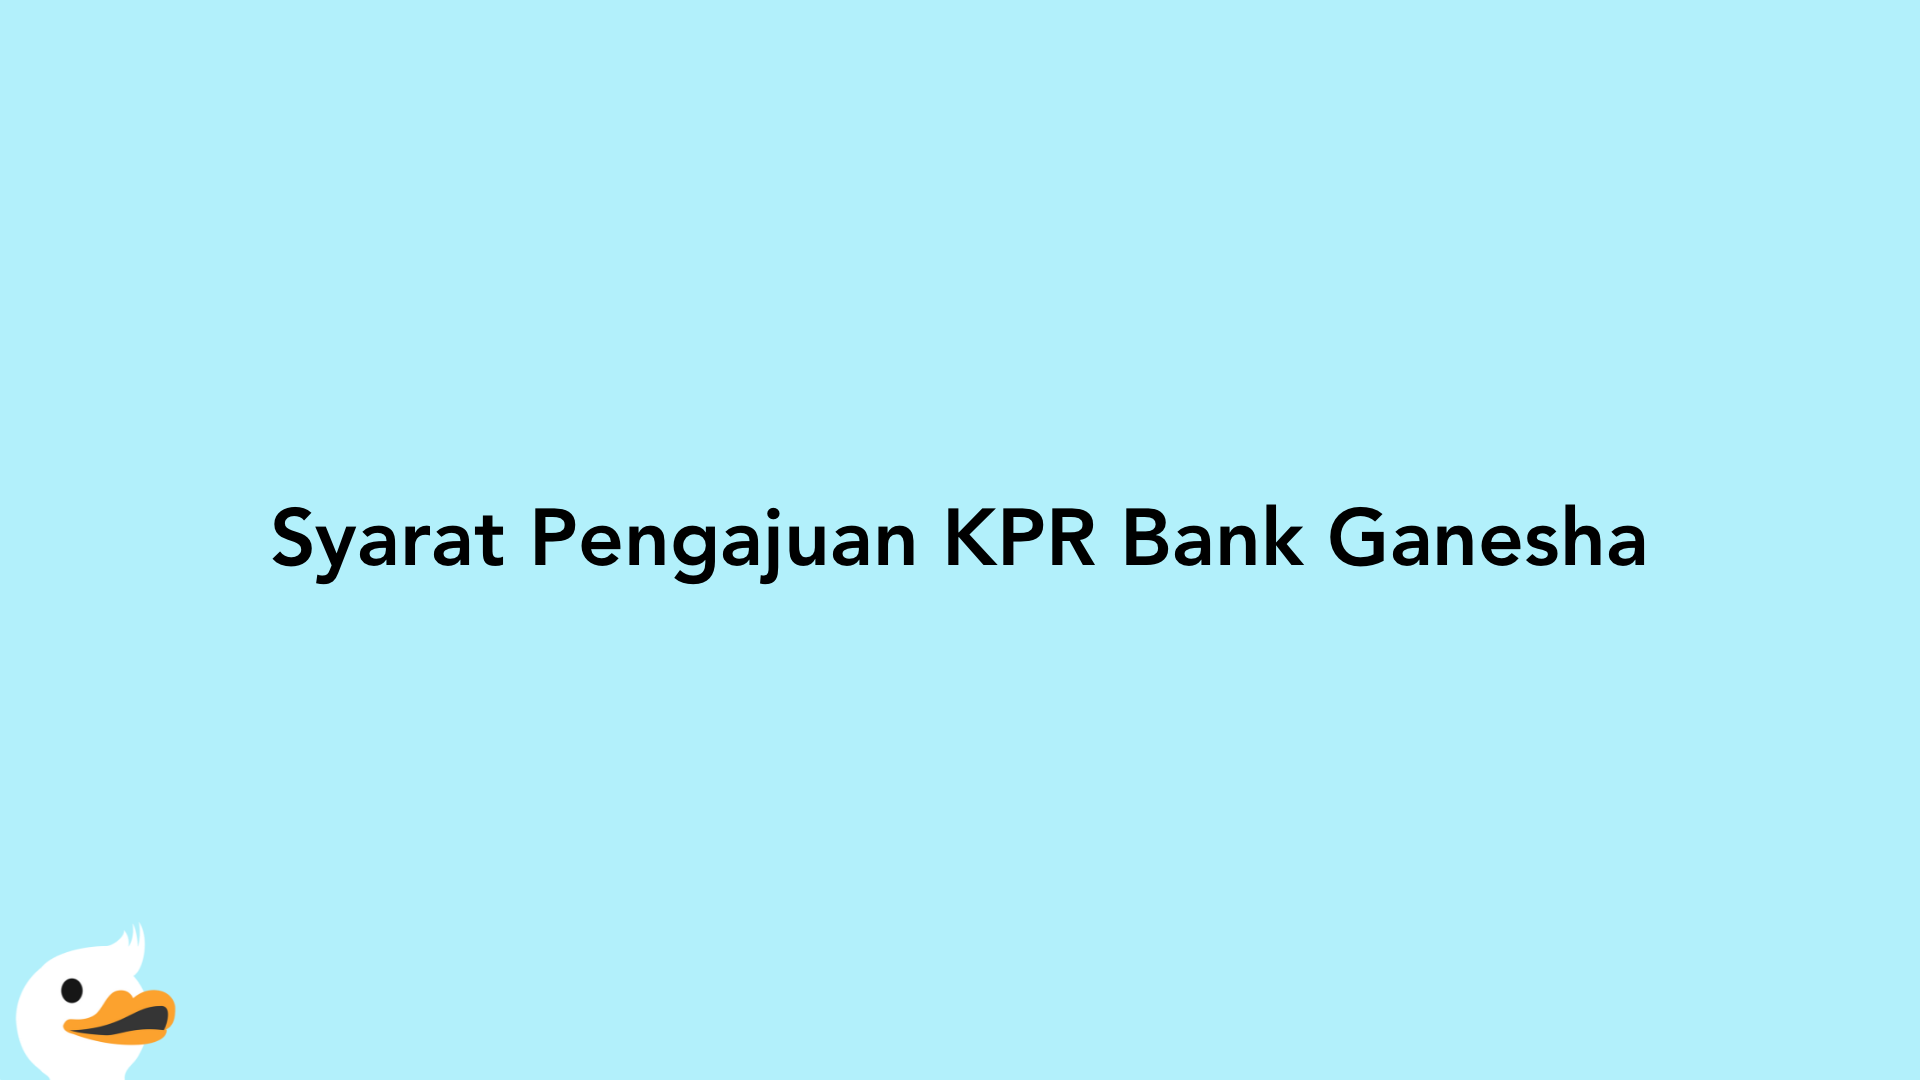 Syarat Pengajuan KPR Bank Ganesha